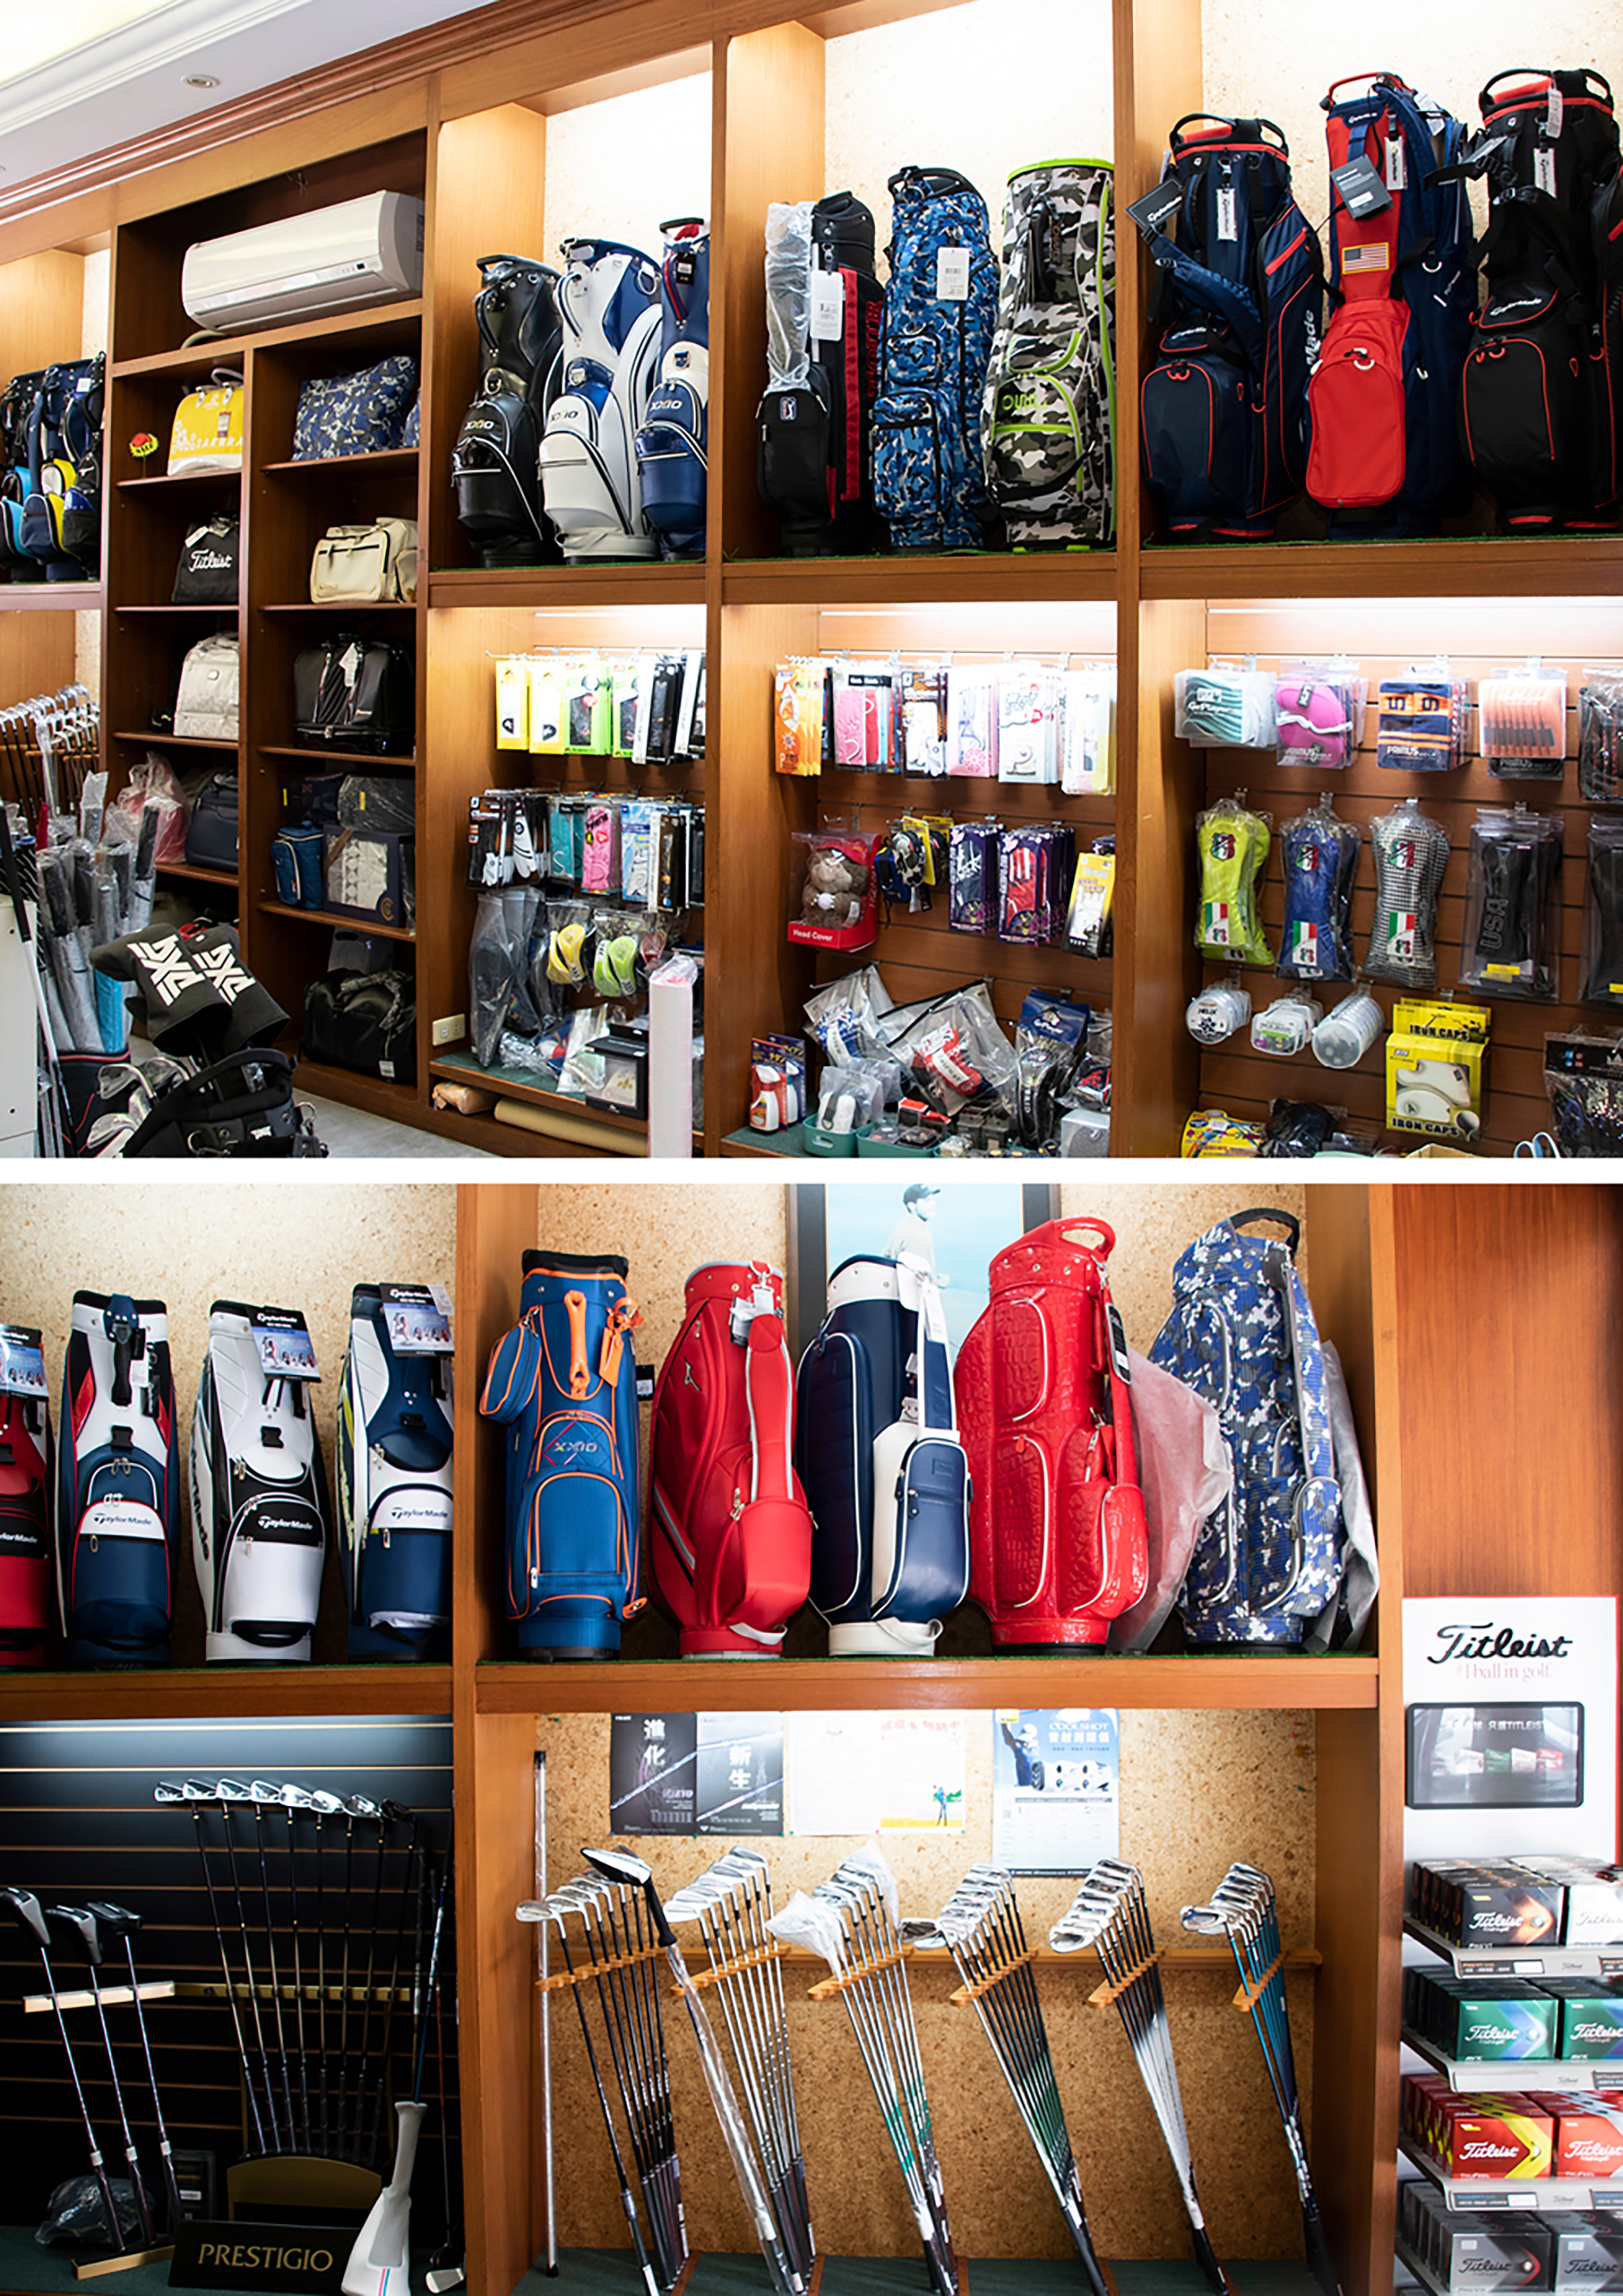 菁英高爾夫兼營球具銷售，圖為永安高爾夫用品社店內景。